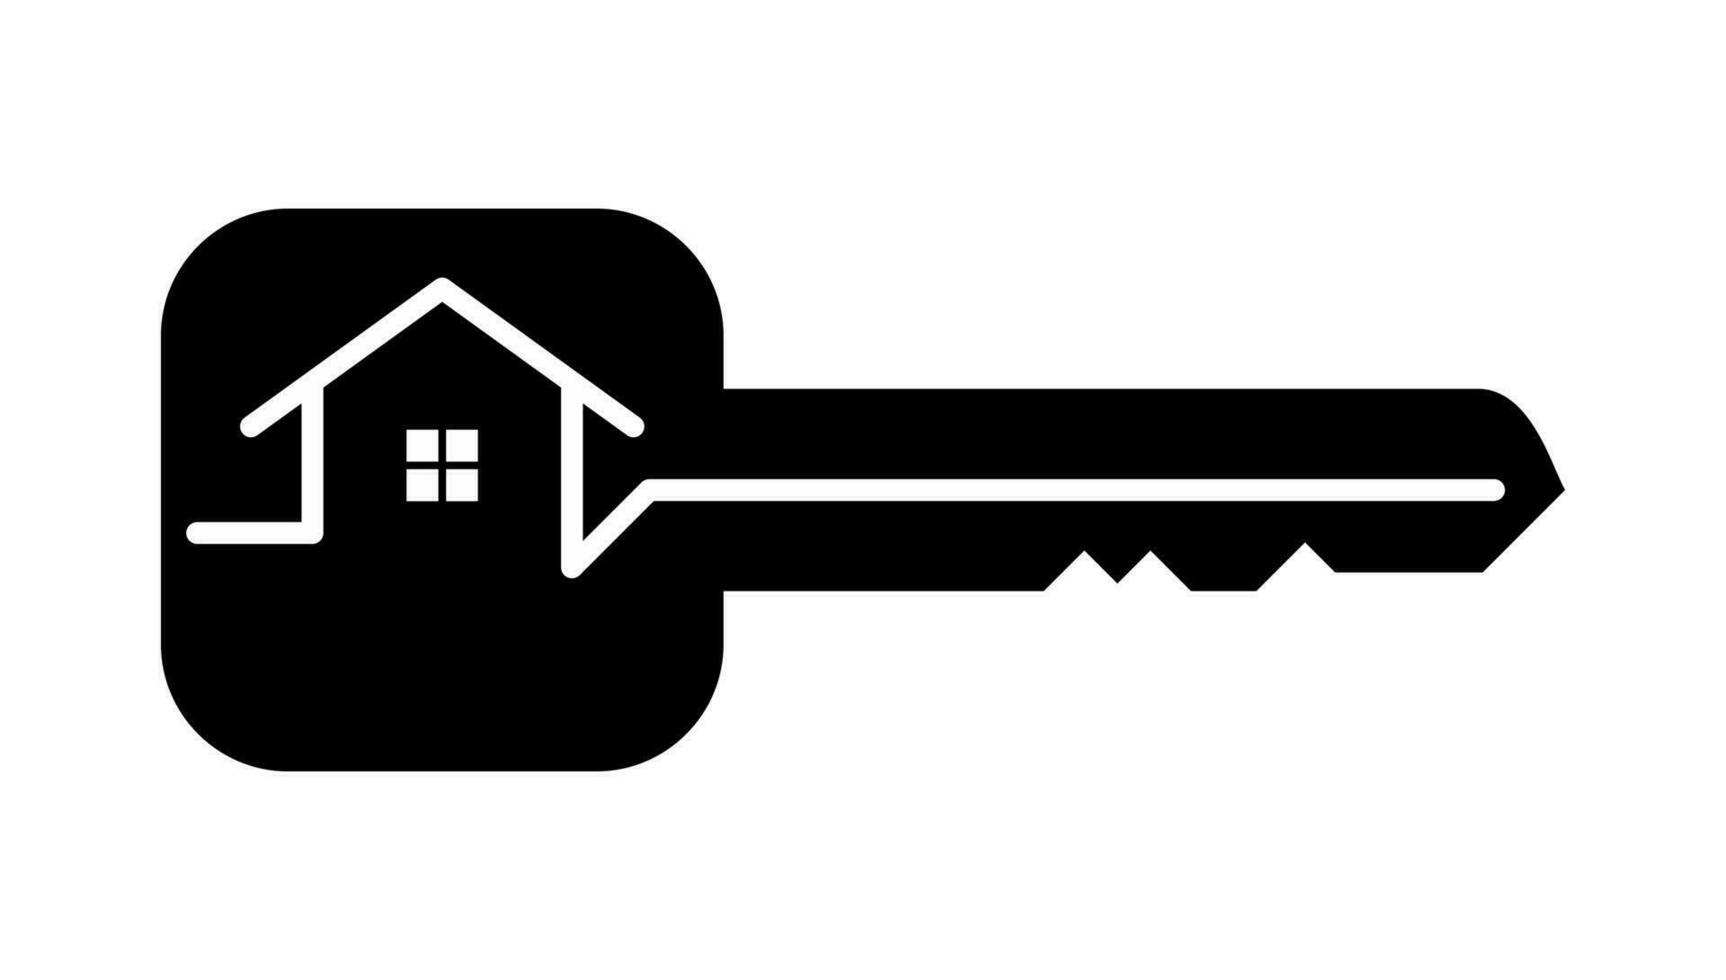 chiave con Casa monoline logo design. di moda piatto stile chiave icona per casa sicurezza, vero proprietà, app, ui, ragnatela . vettore illustrazione